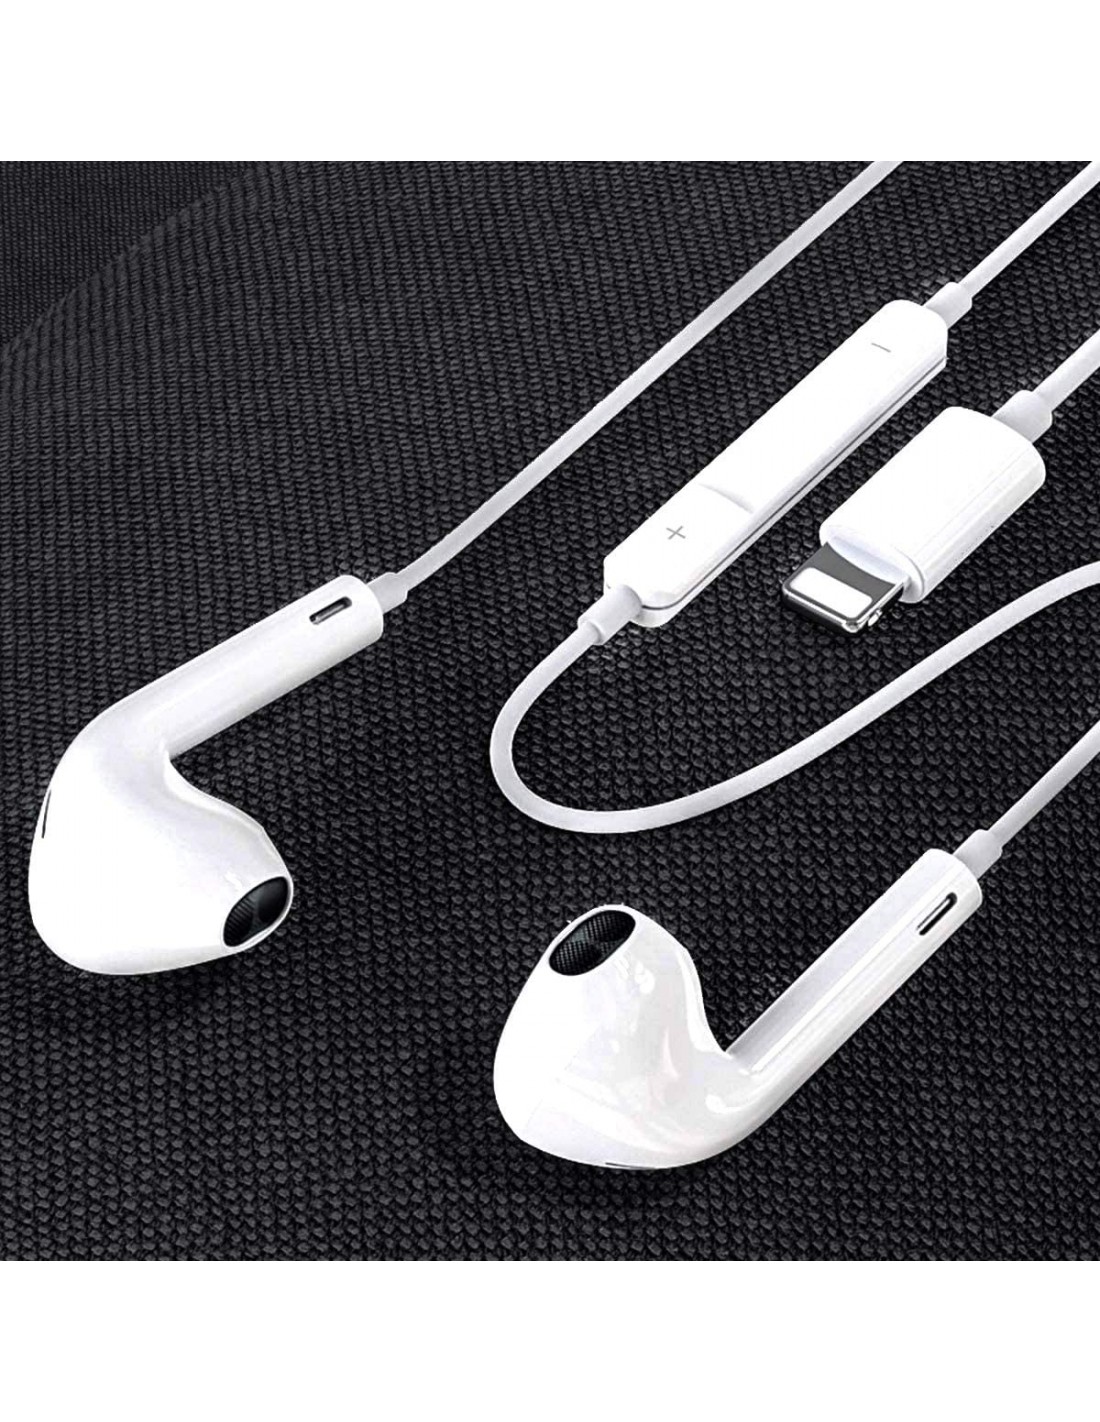 Auriculares para iPhone 【Certificado MFi Apple】 Cascos Cable con  Aislamiento de Ruido Soporte Control de Volumen de Llamadas,Compatible con  iPhone